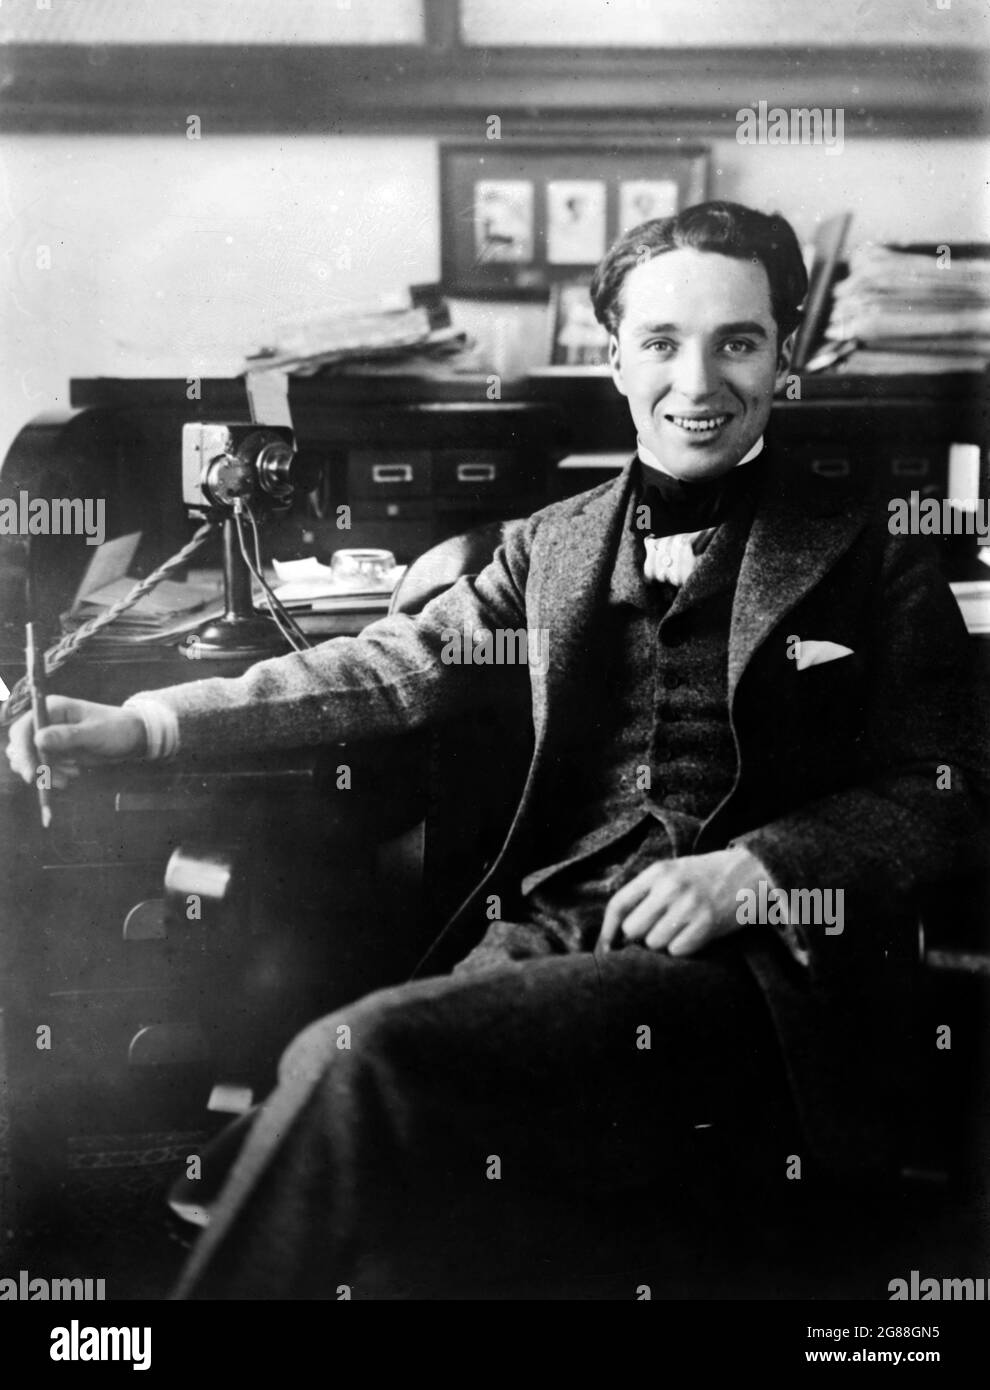 Ritratto della star silenziosa Charlie Chaplin, intorno al 1915-1920. Chaplin seduto ad una scrivania sorridendo e guardando rilassato. Foto Stock